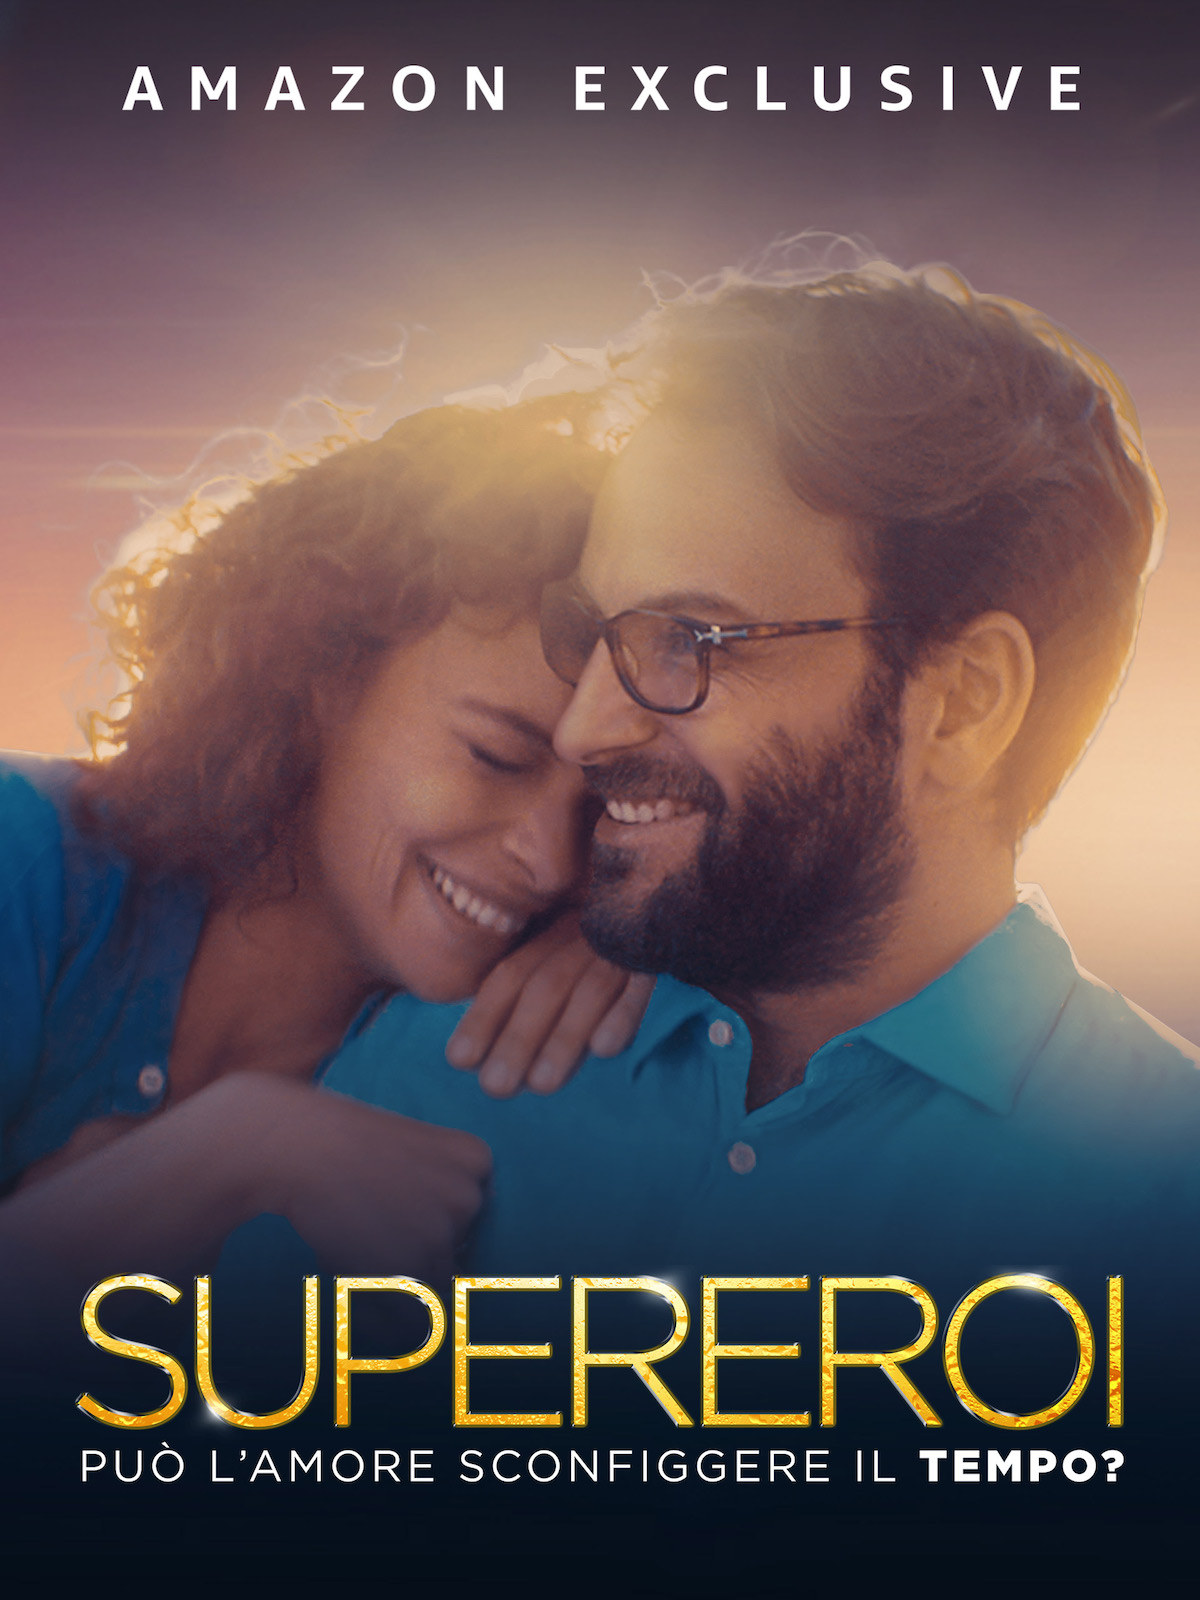 Supereroi, il film romantico di Paolo Genovese disponibile su Prime Video